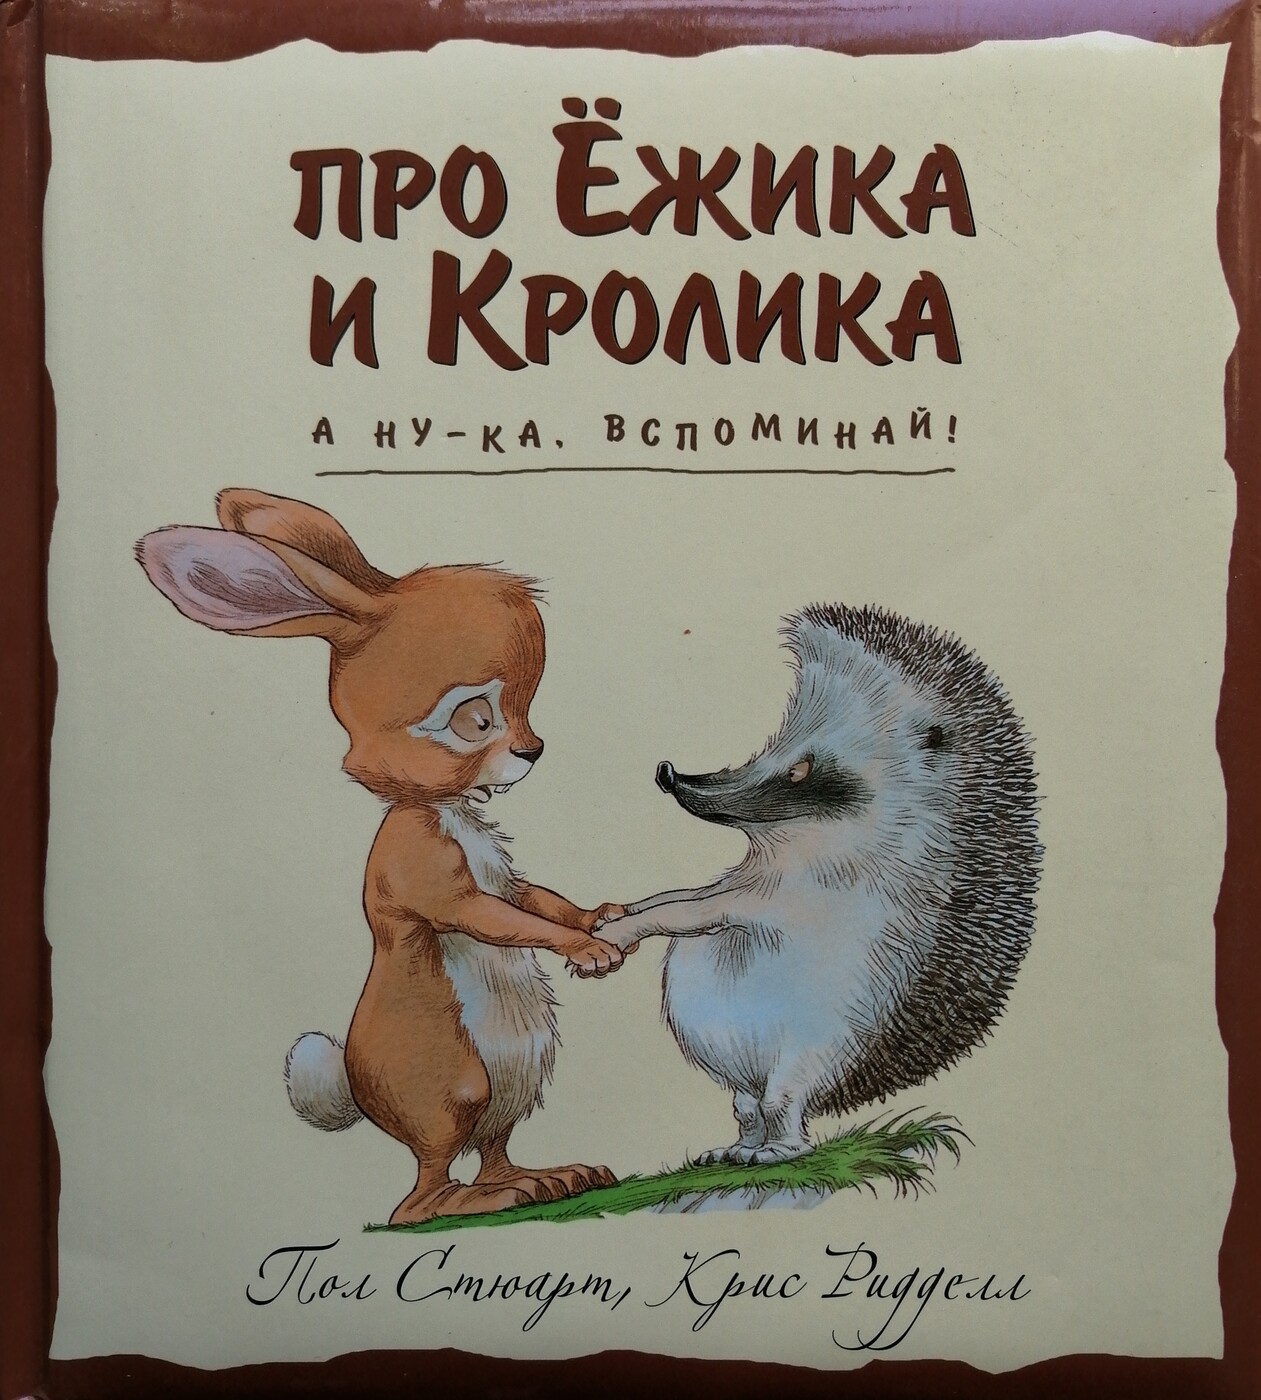 Сказка про зайчика и ежика: Сказка Заяц и Ёж — Сказки для детей